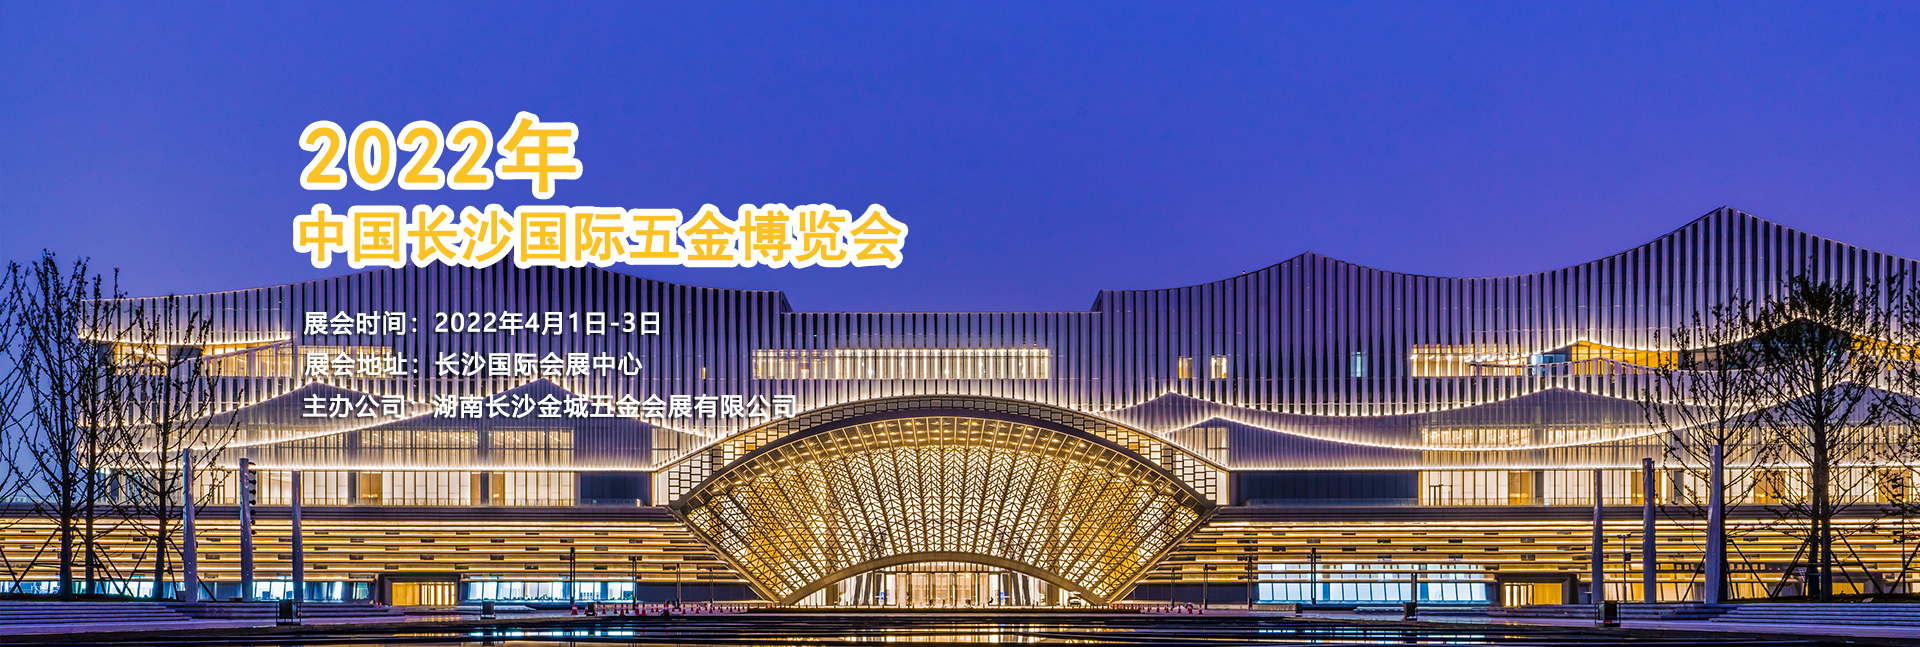 2022中国长沙国际五金博览会